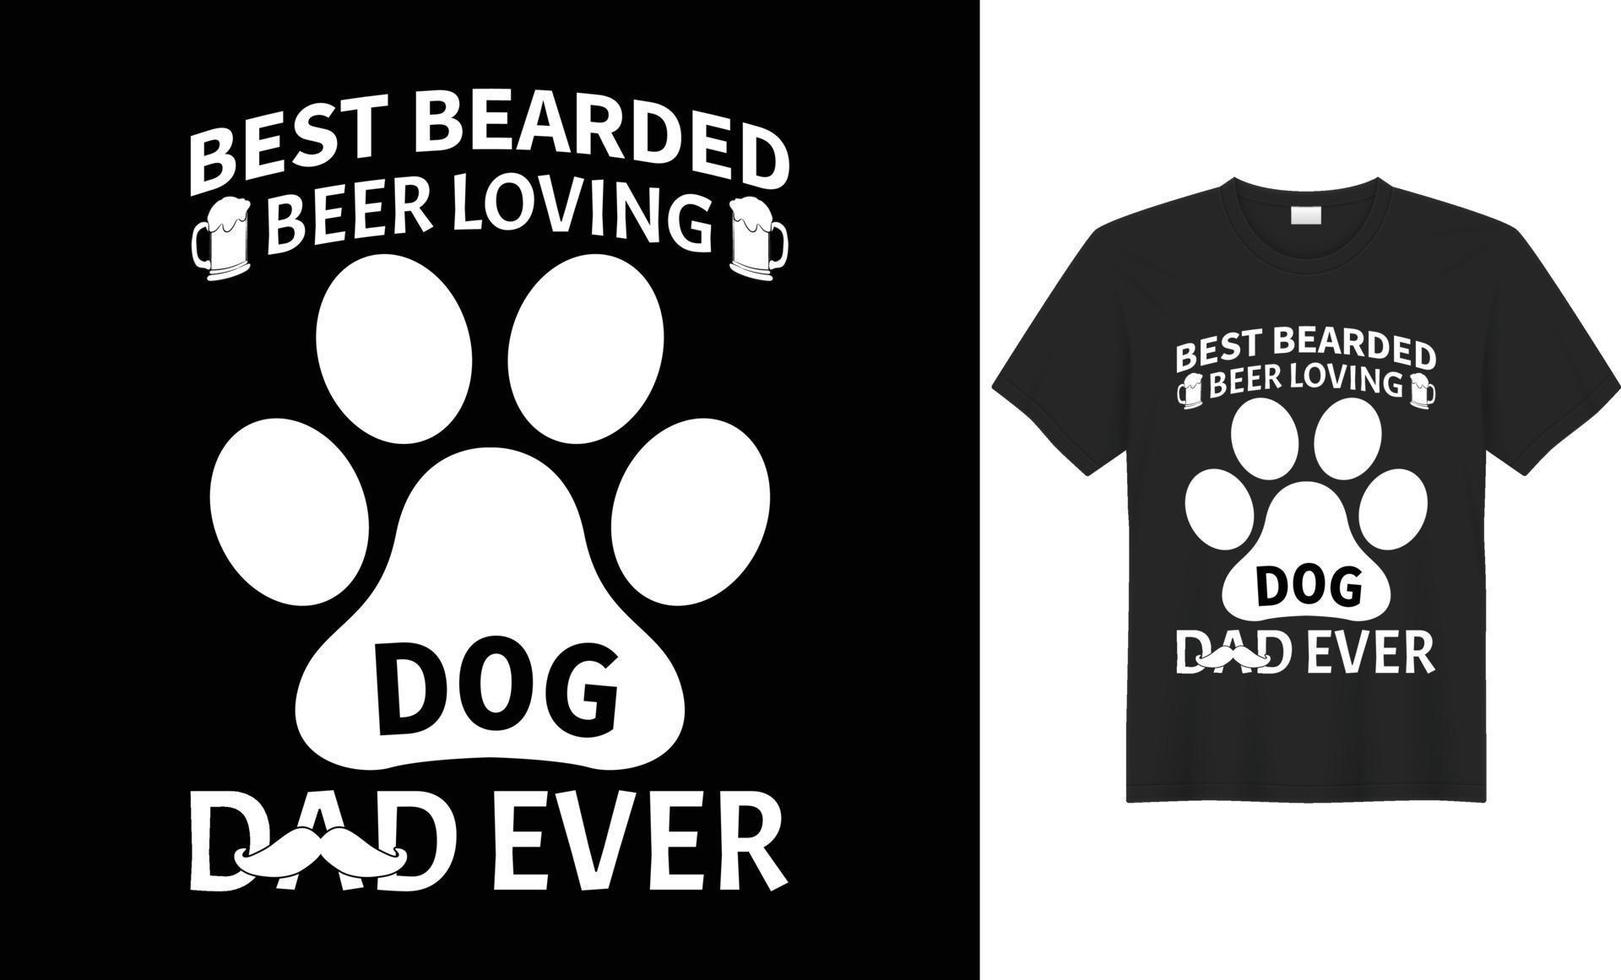 typografi, text effekt, och vektorbaserad t-shirt design för fäder och barn vem kärlek deras fäder. vektor